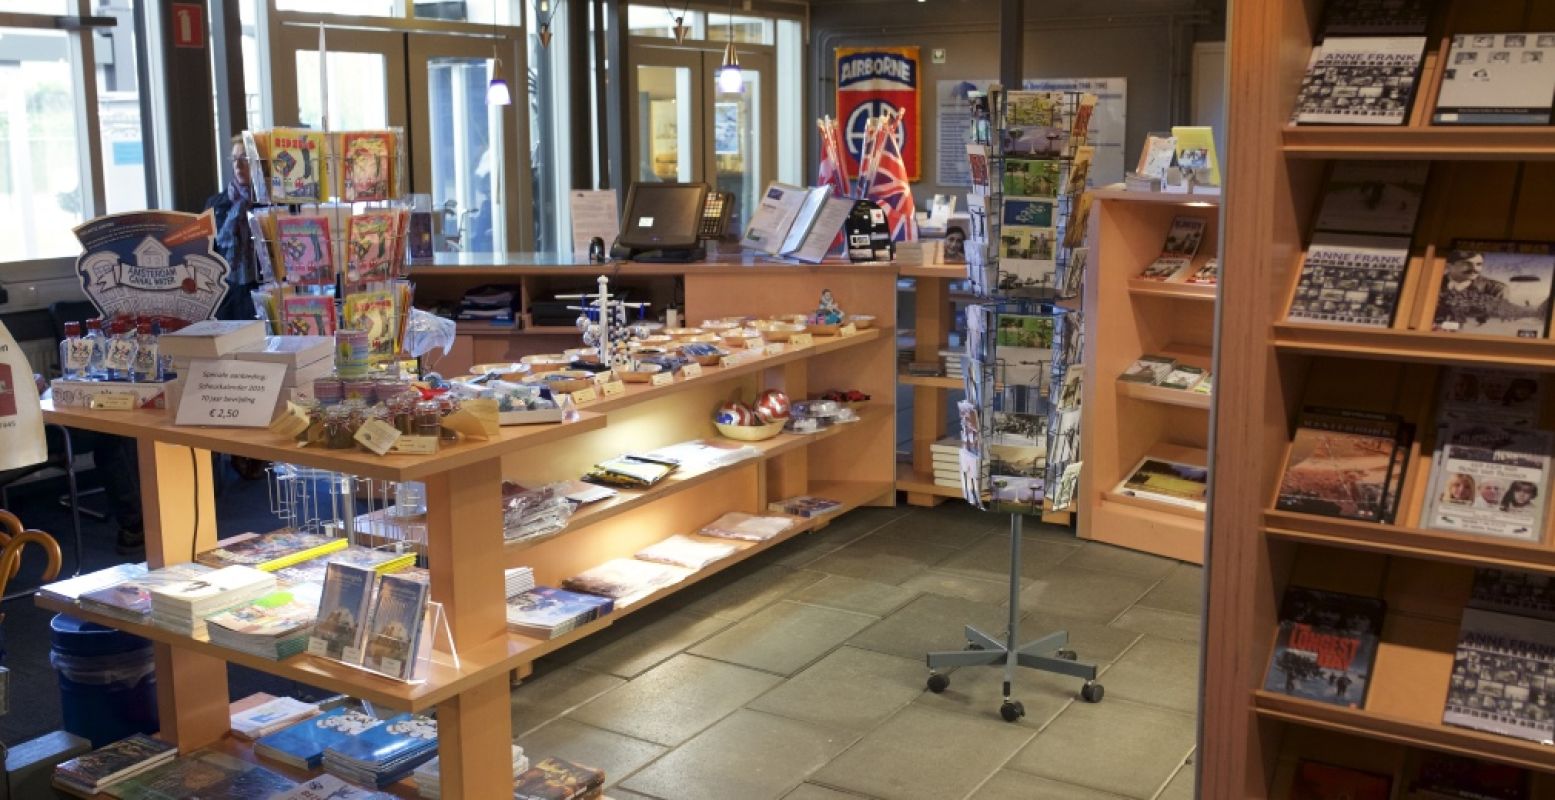 De museumwinkel ligt vol souvenirs en boeken rondom de Tweede Wereldoorlog. En alles moet op! Foto: Archief Bevrijdingsmuseum Groesbeek.